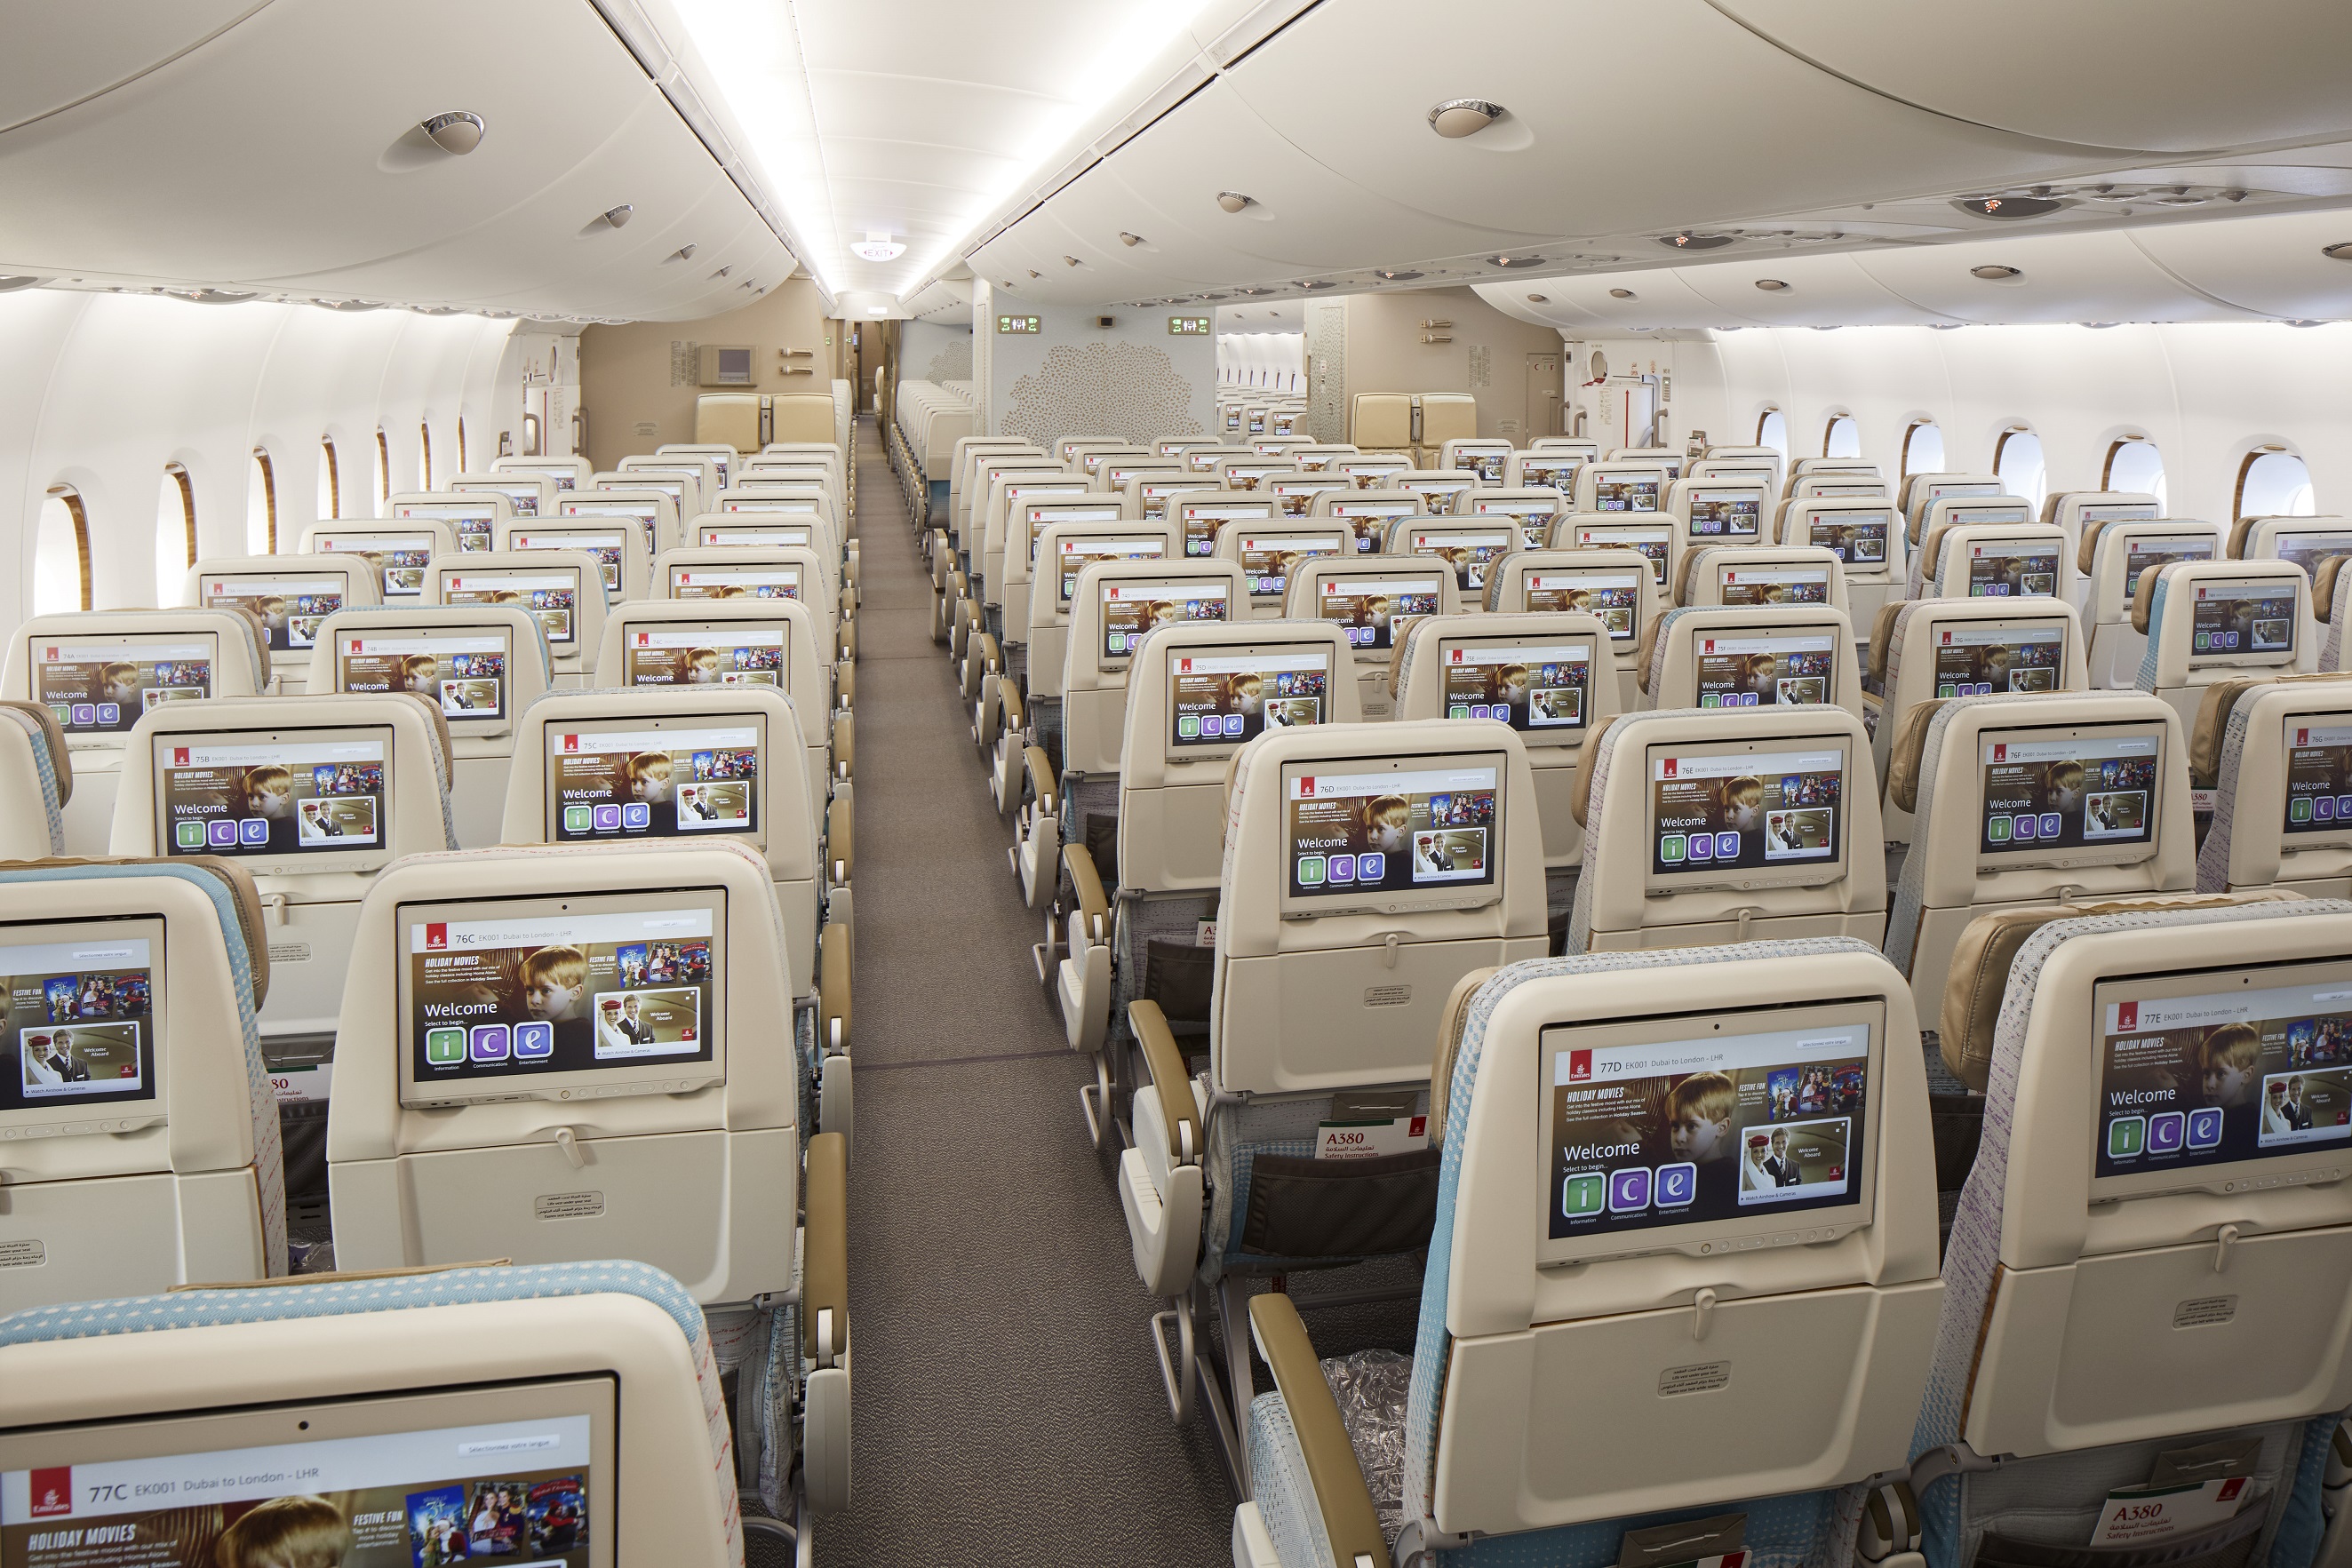 包括a380客机宽敞的机舱在视觉和感觉上都会更加让人印象深刻且备感